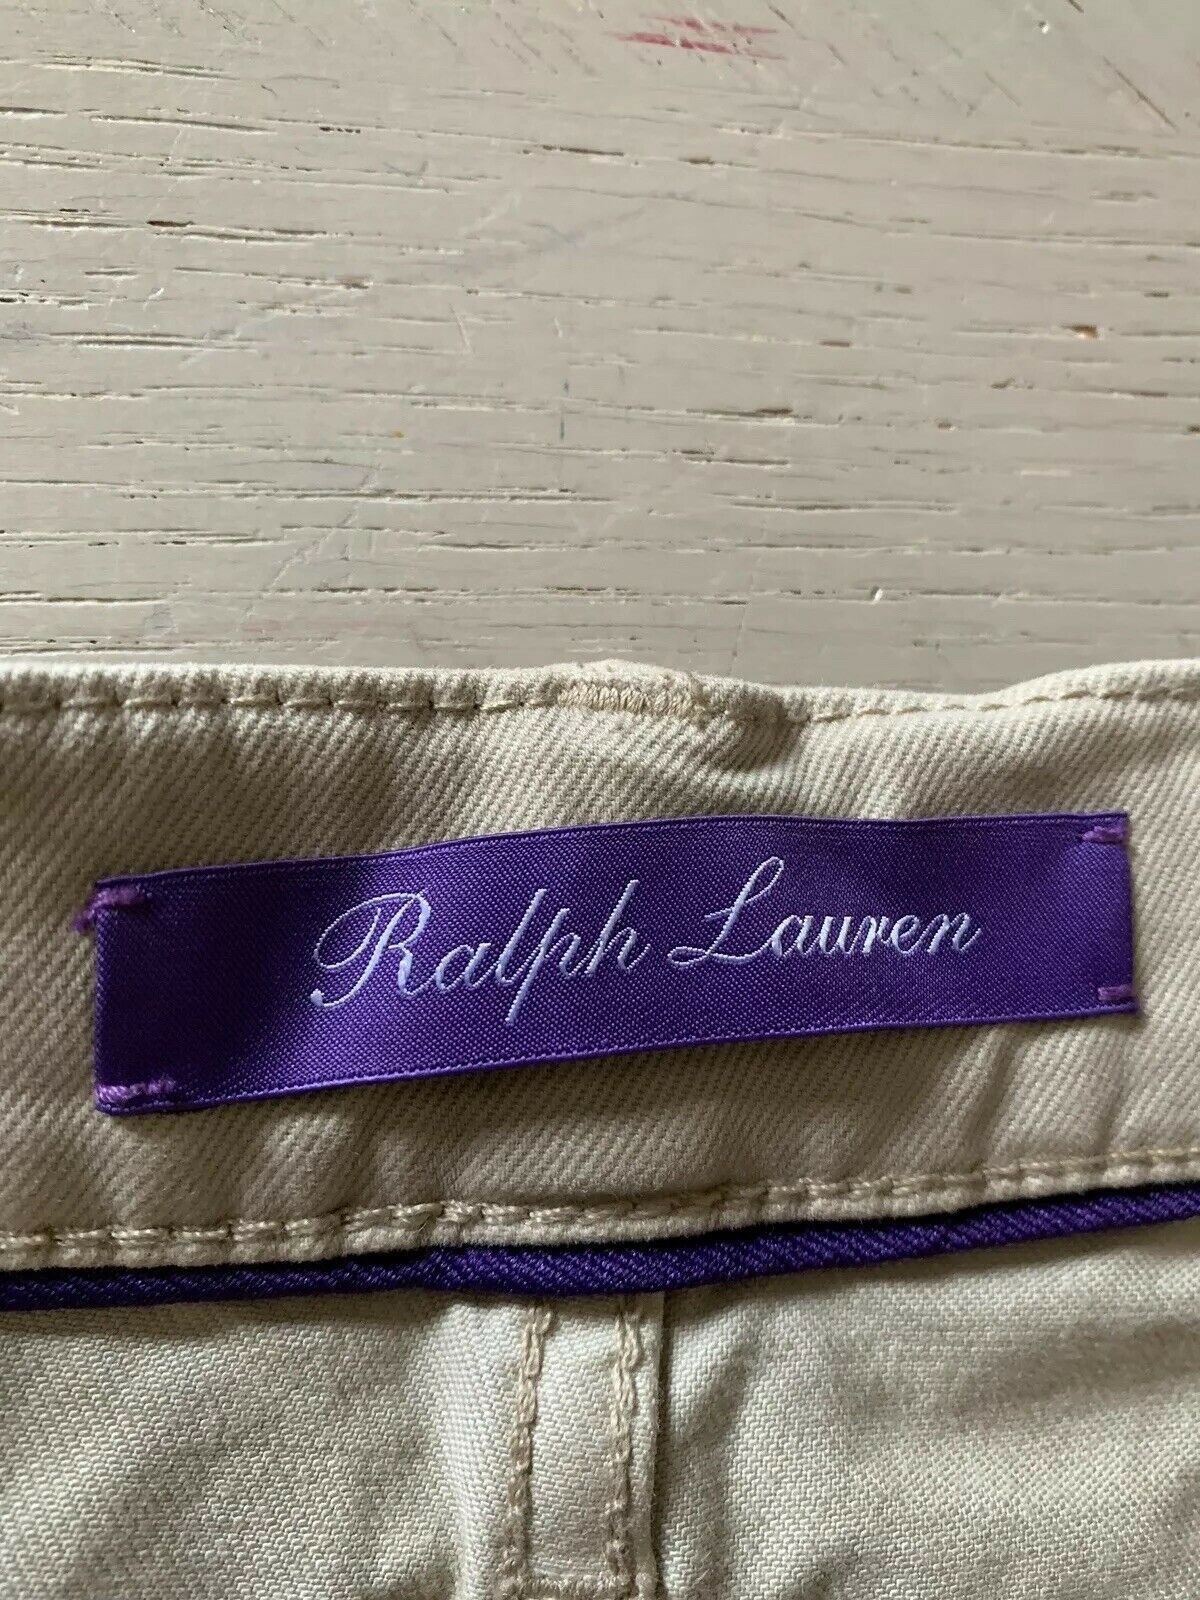 Neu mit Etikett: 395 $ Ralph Lauren Purple Label Herrenjeanshose Slim Fit Beige 34/32L US